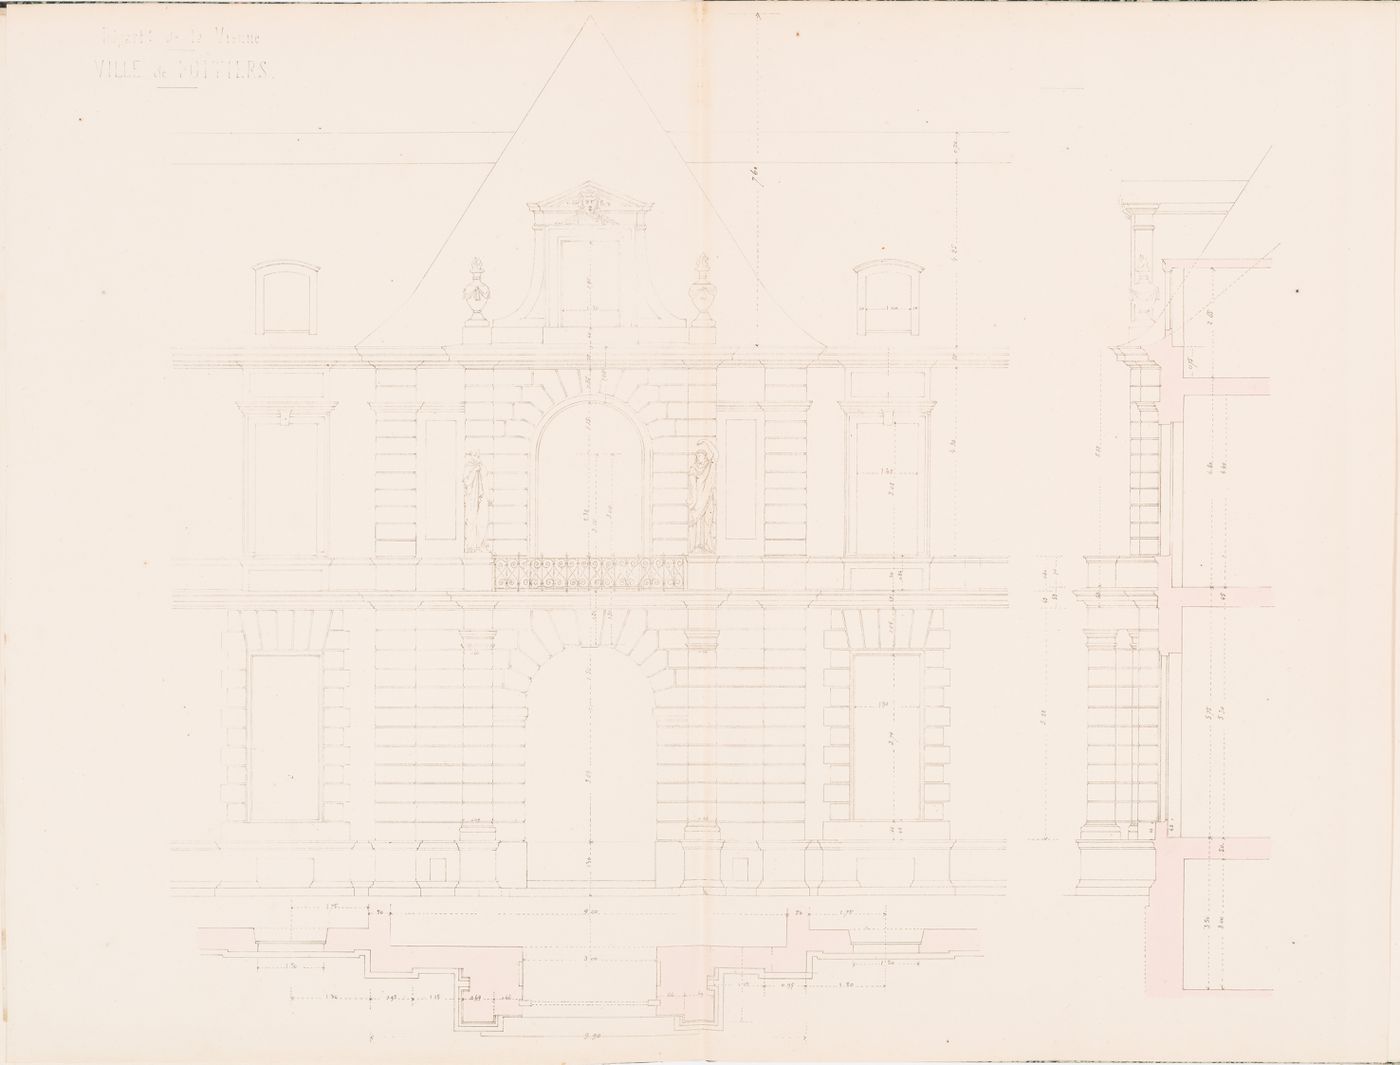 Project for a Hôtel de préfecture, Poitiers: Partial elevation, plan, and profile for the principal façade for the Hôtel du Préfet